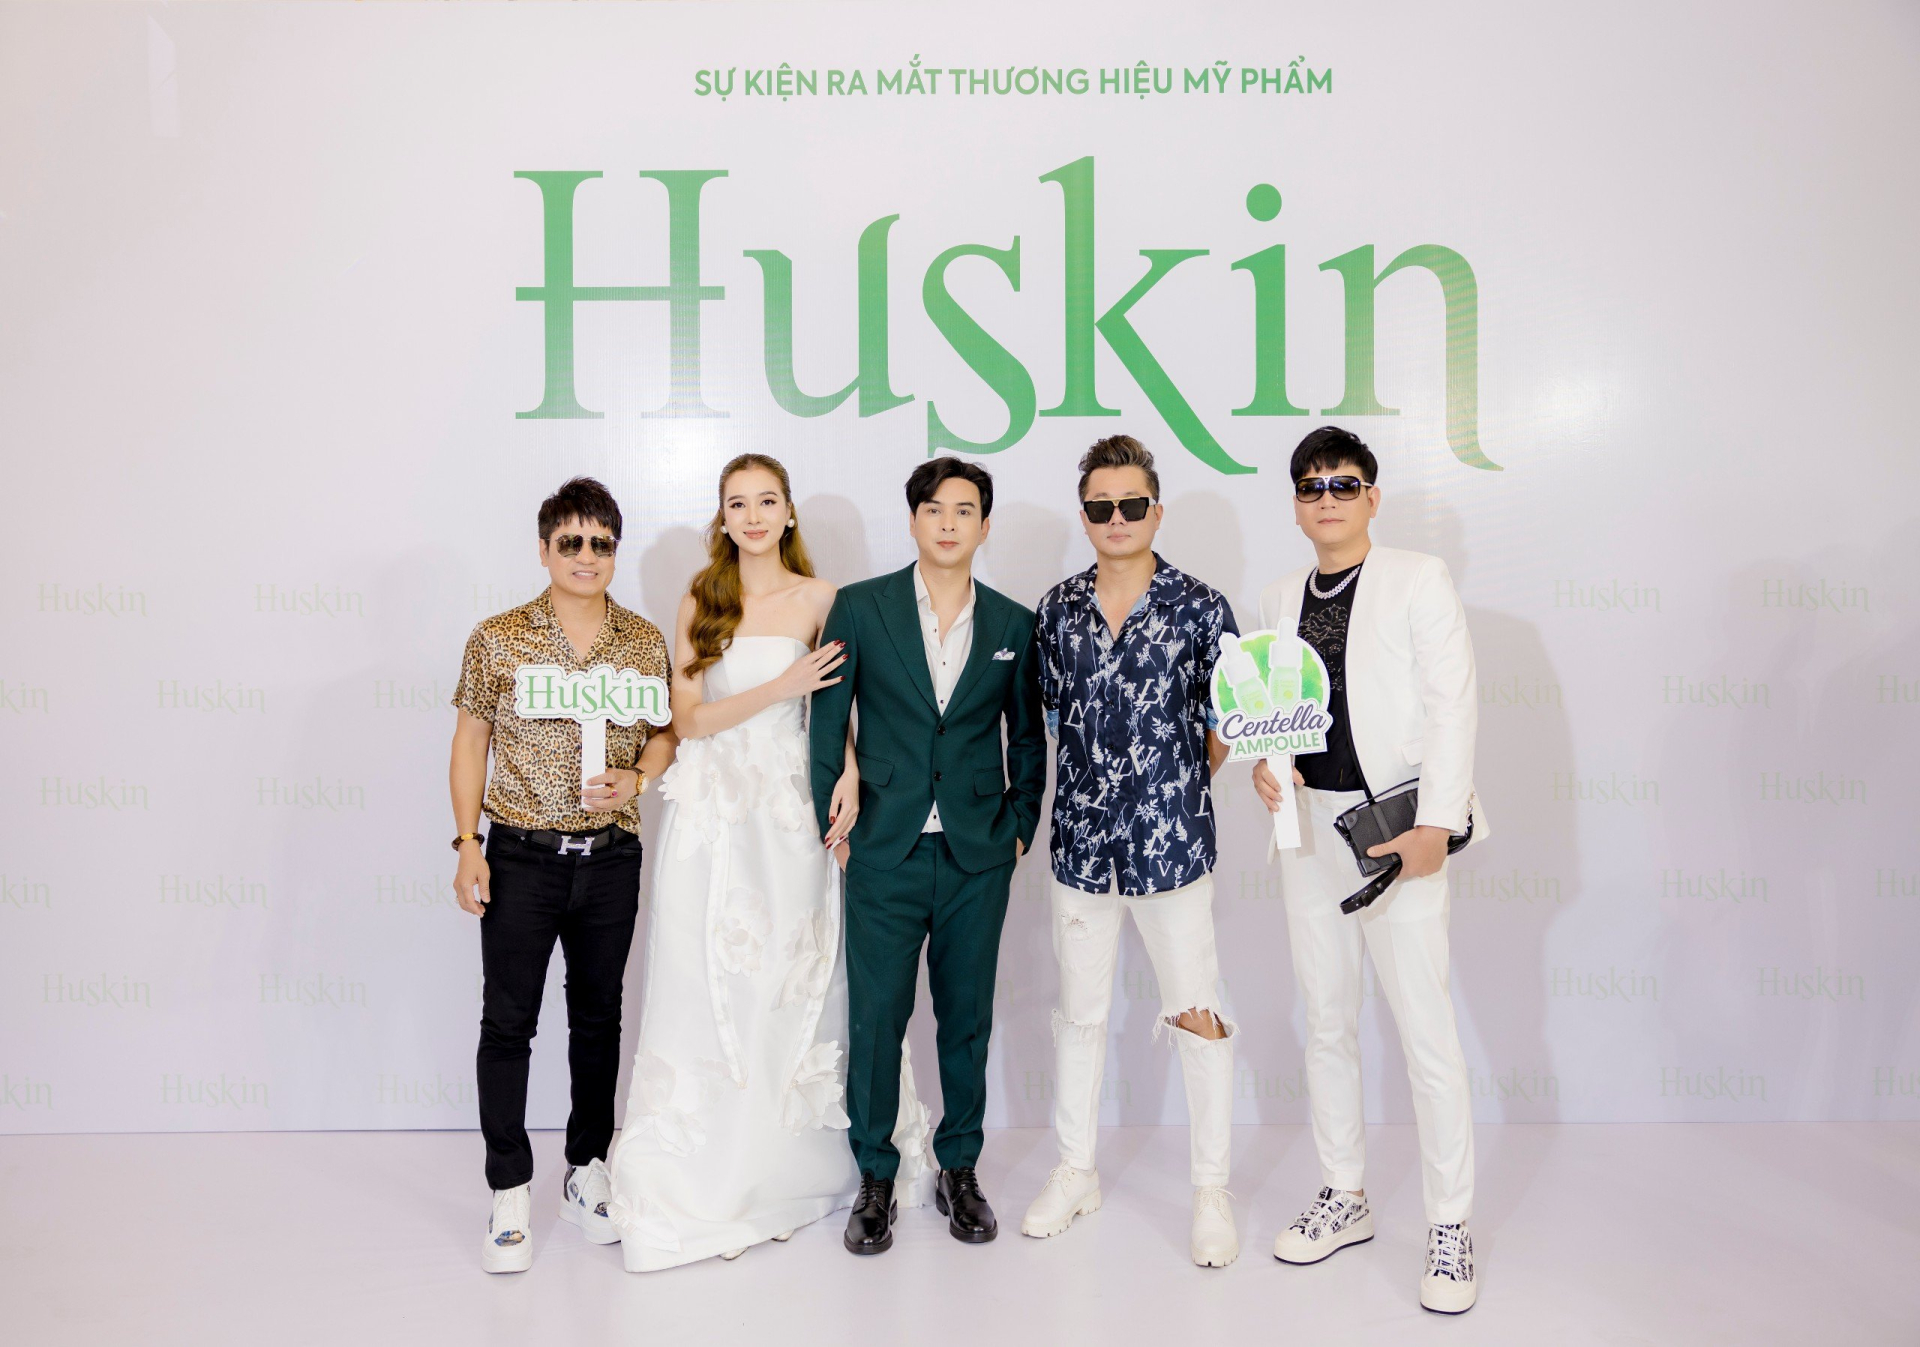 Vợ chồng Hồ Quang Hiếu ra mắt thương hiệu mỹ phẩm Huskin - ảnh 3